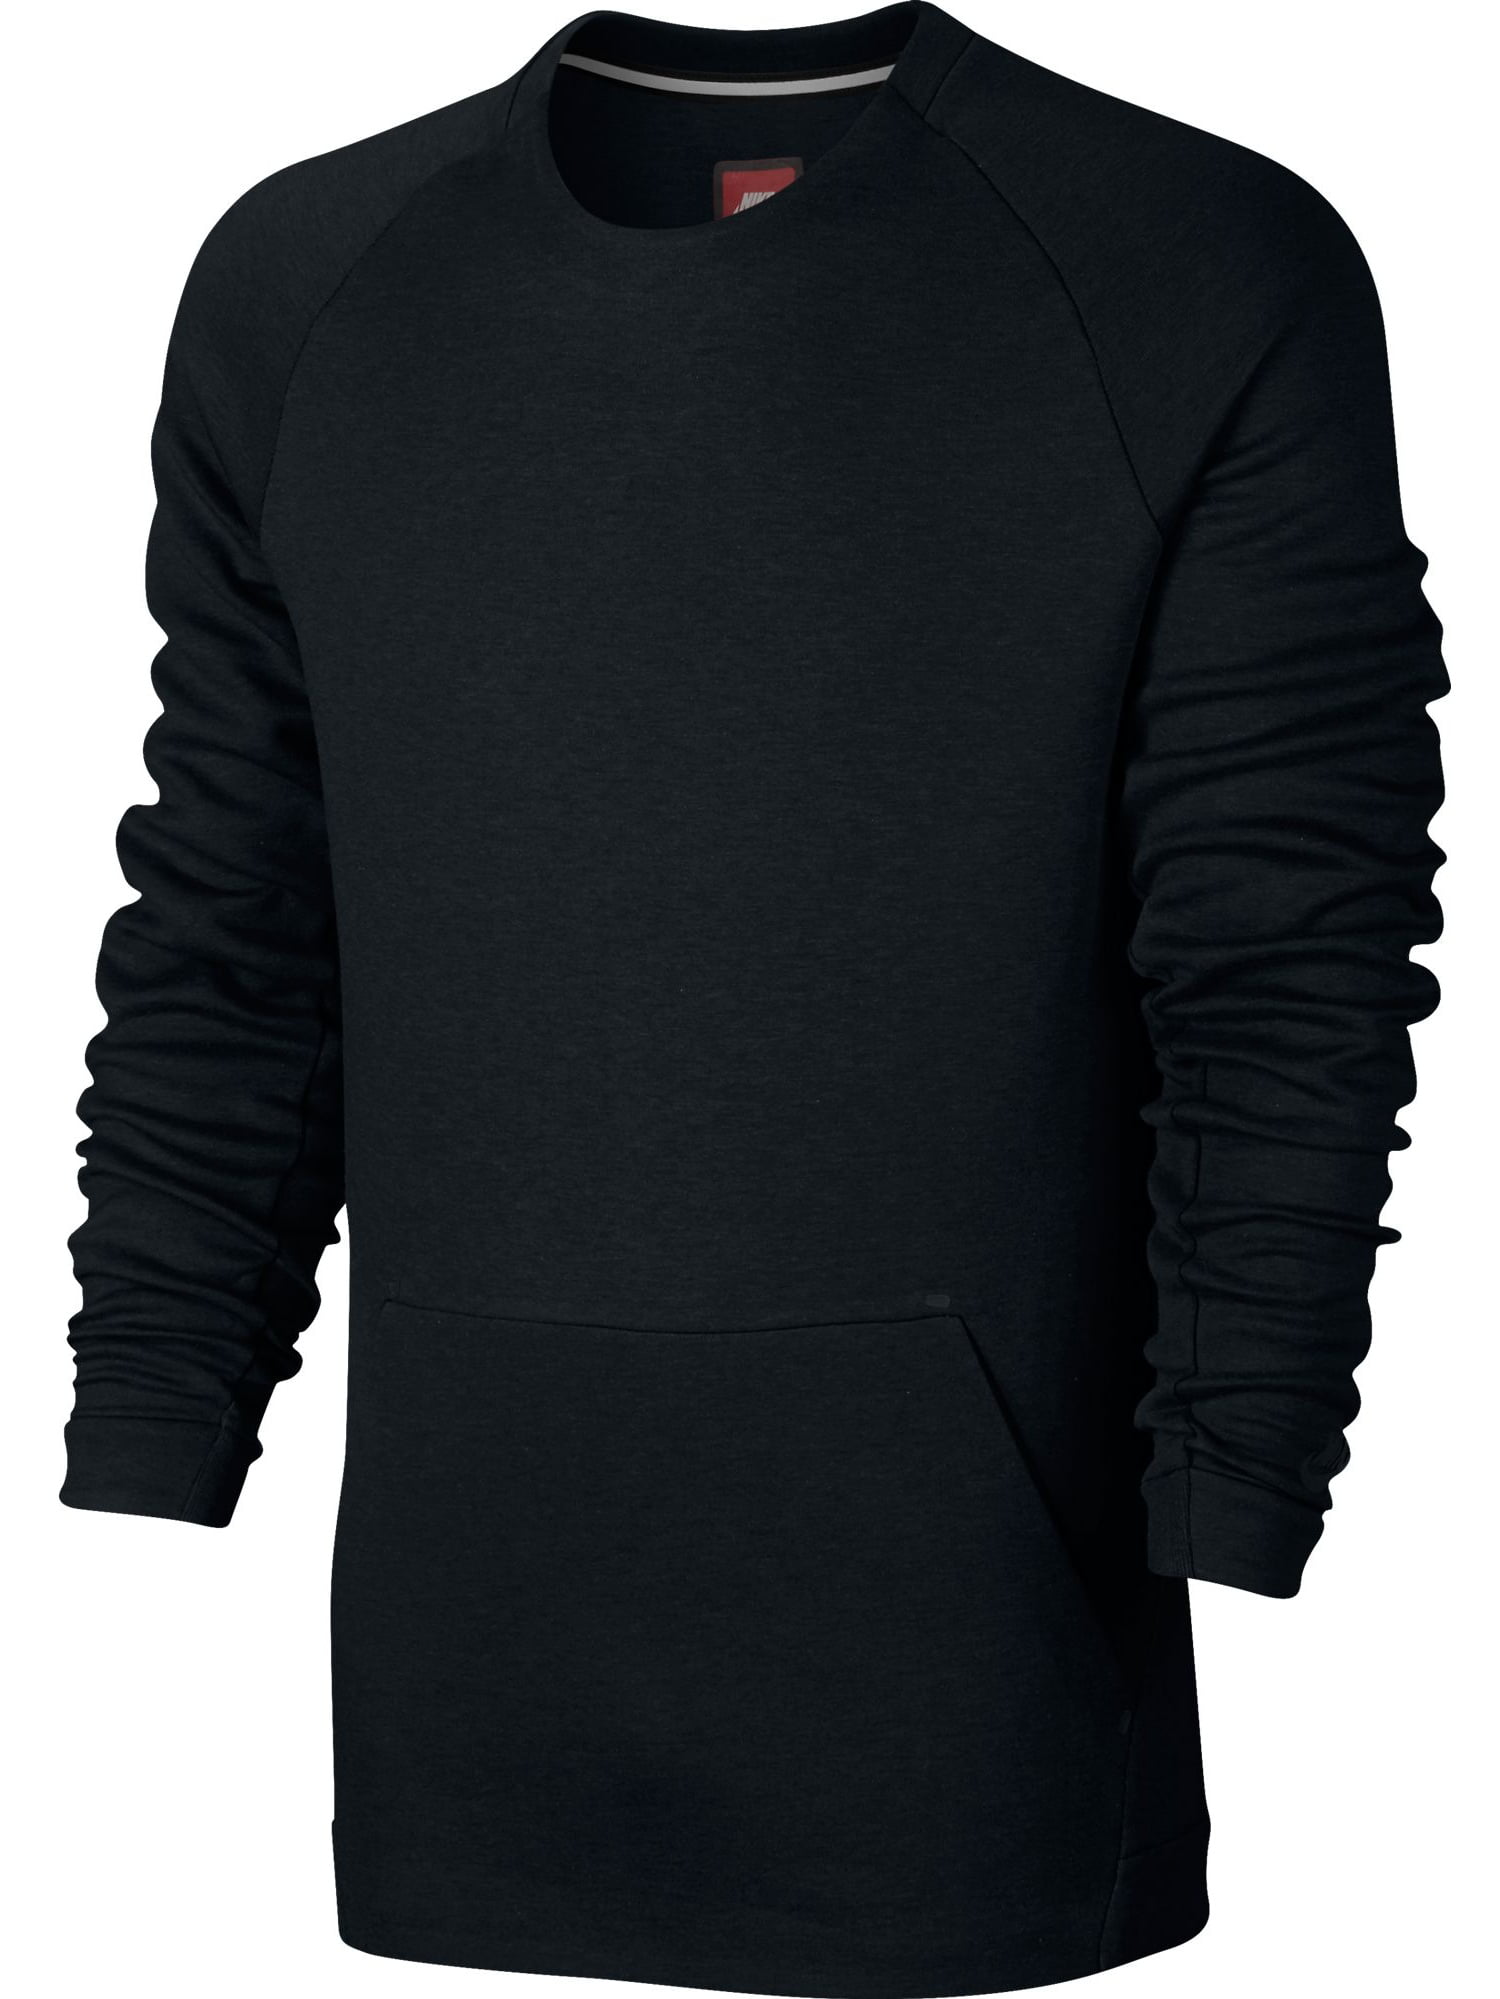 Nike - Nike Sportswear Tech Fleece Crew Neck Men's Sweatshirt Black ...